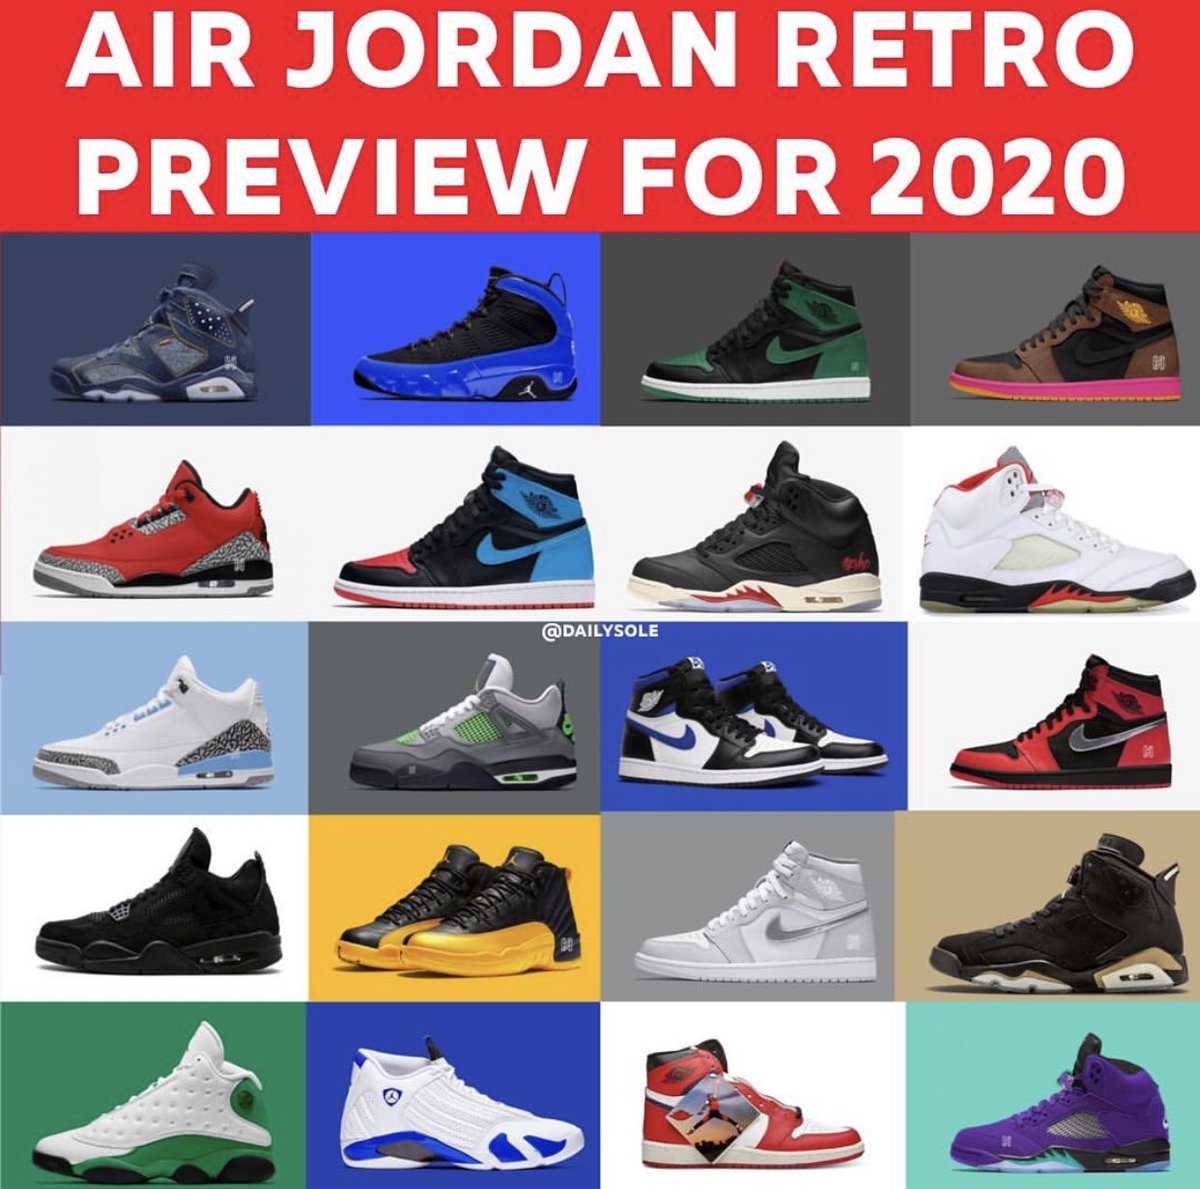 2020 jordan releases